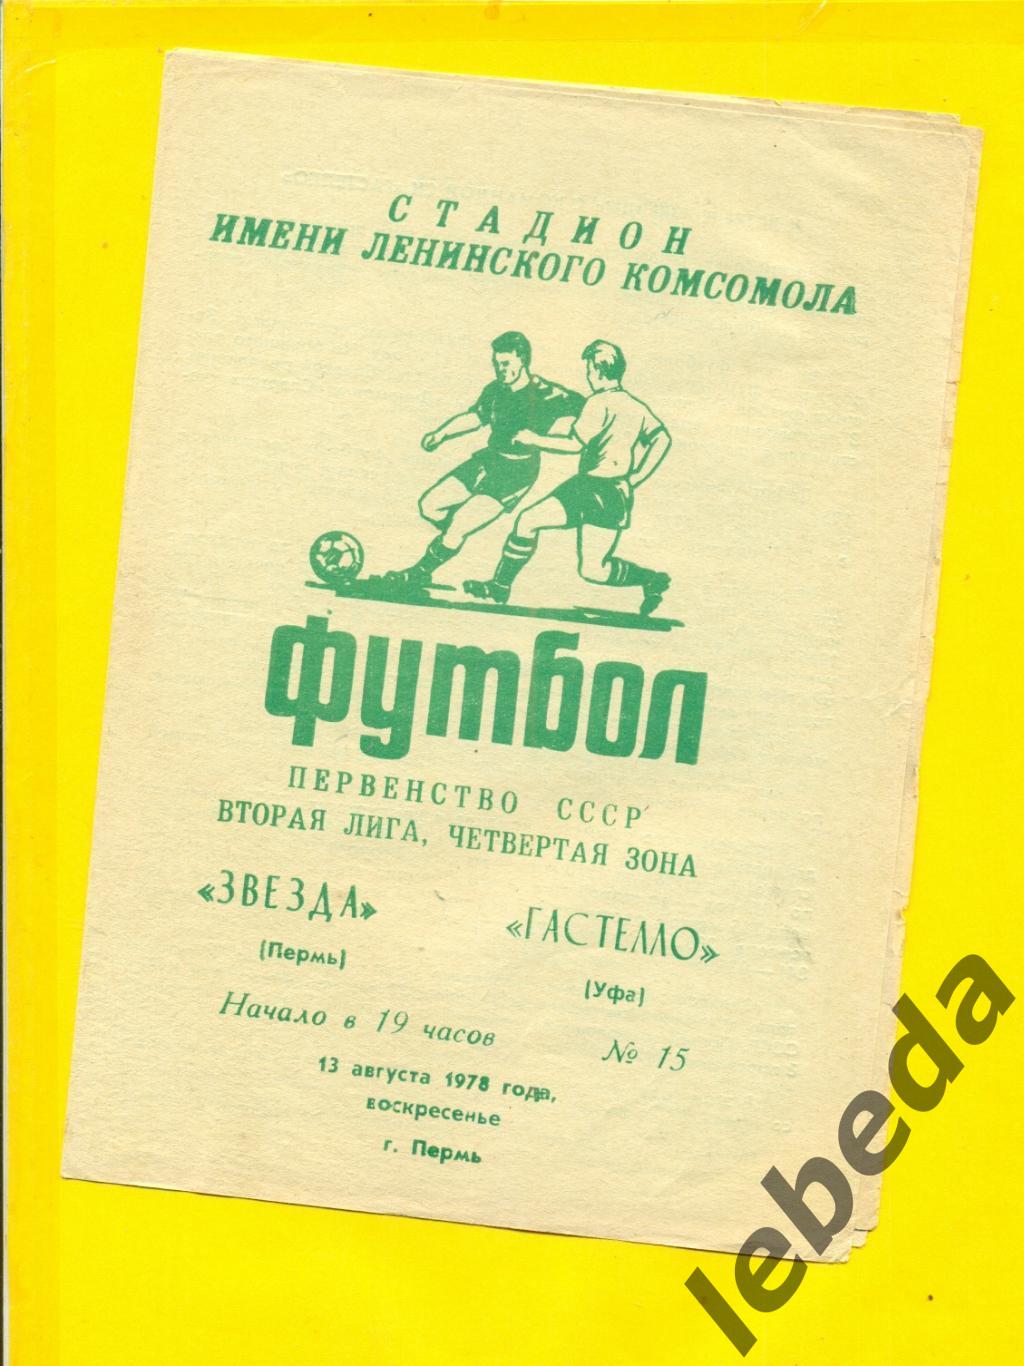 Звезда Пермь - Гастелло Уфа - 1978 г. ( 13.08.78.)